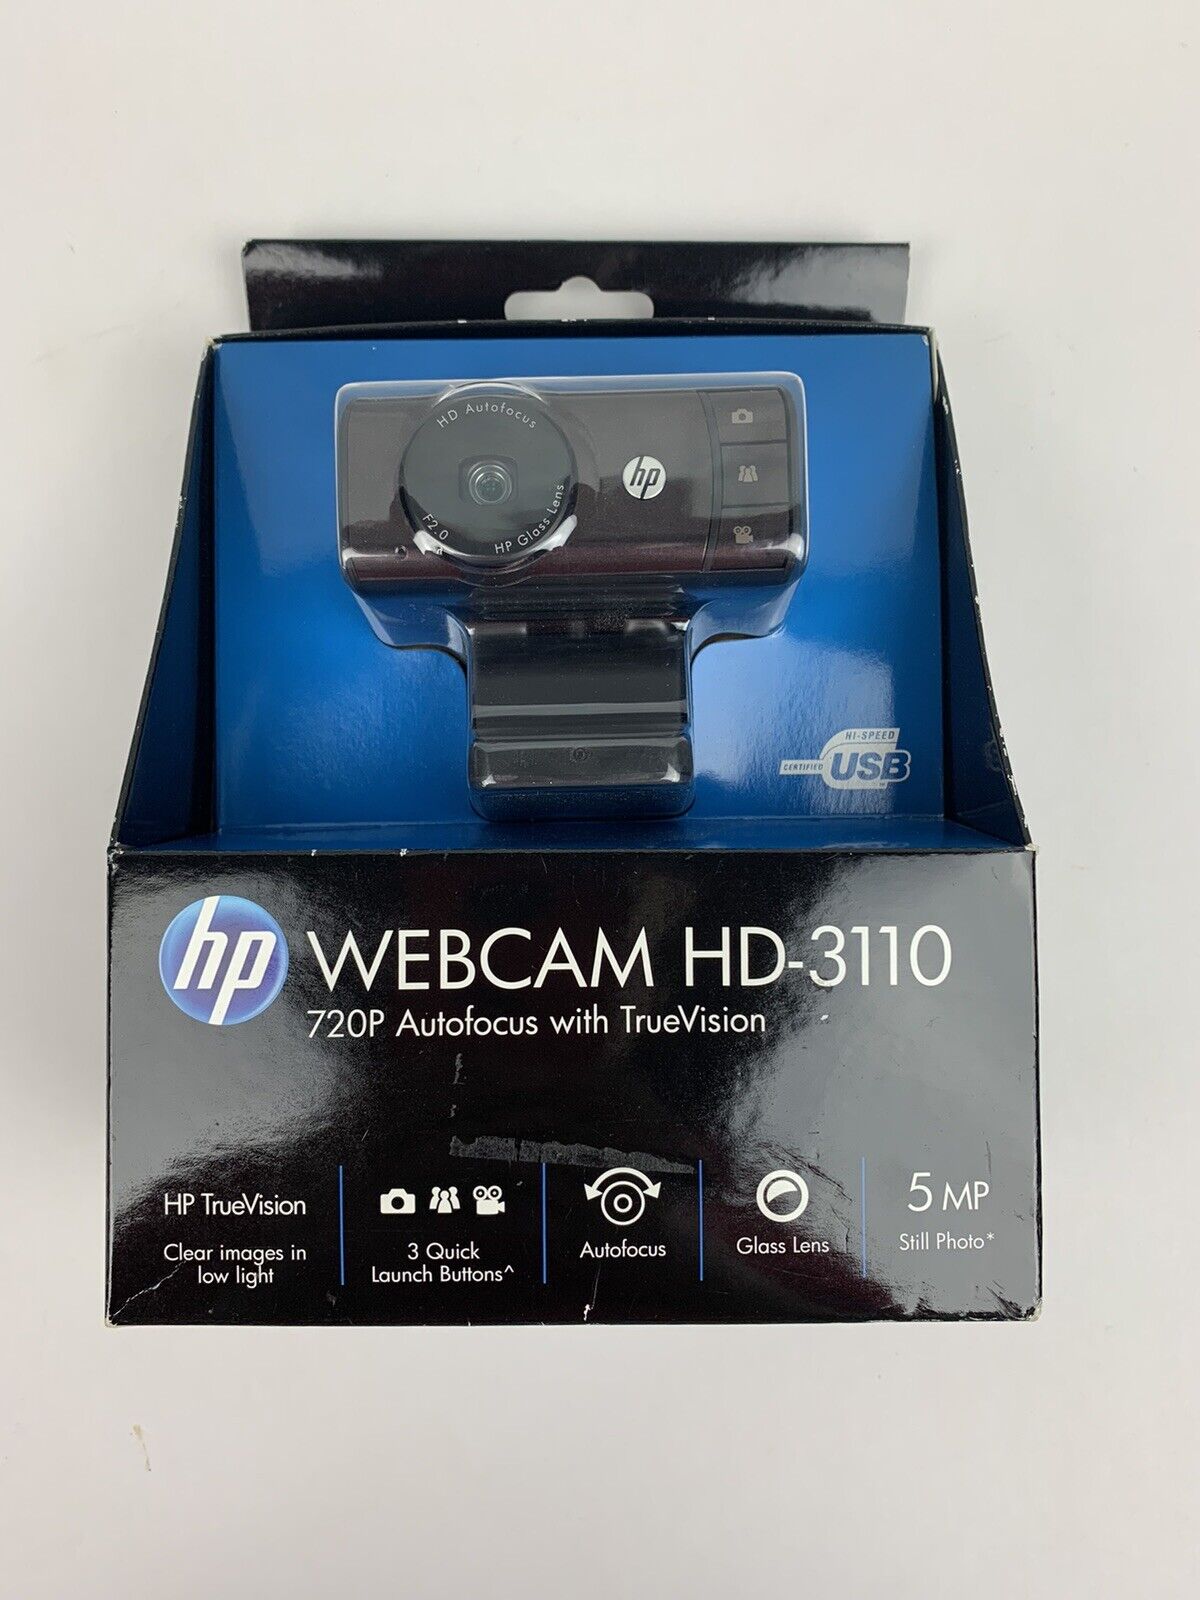 NEW HP WebCam HD-3110 HD 720p Autofocus Notebook web camera Windows 7 pan / tilt